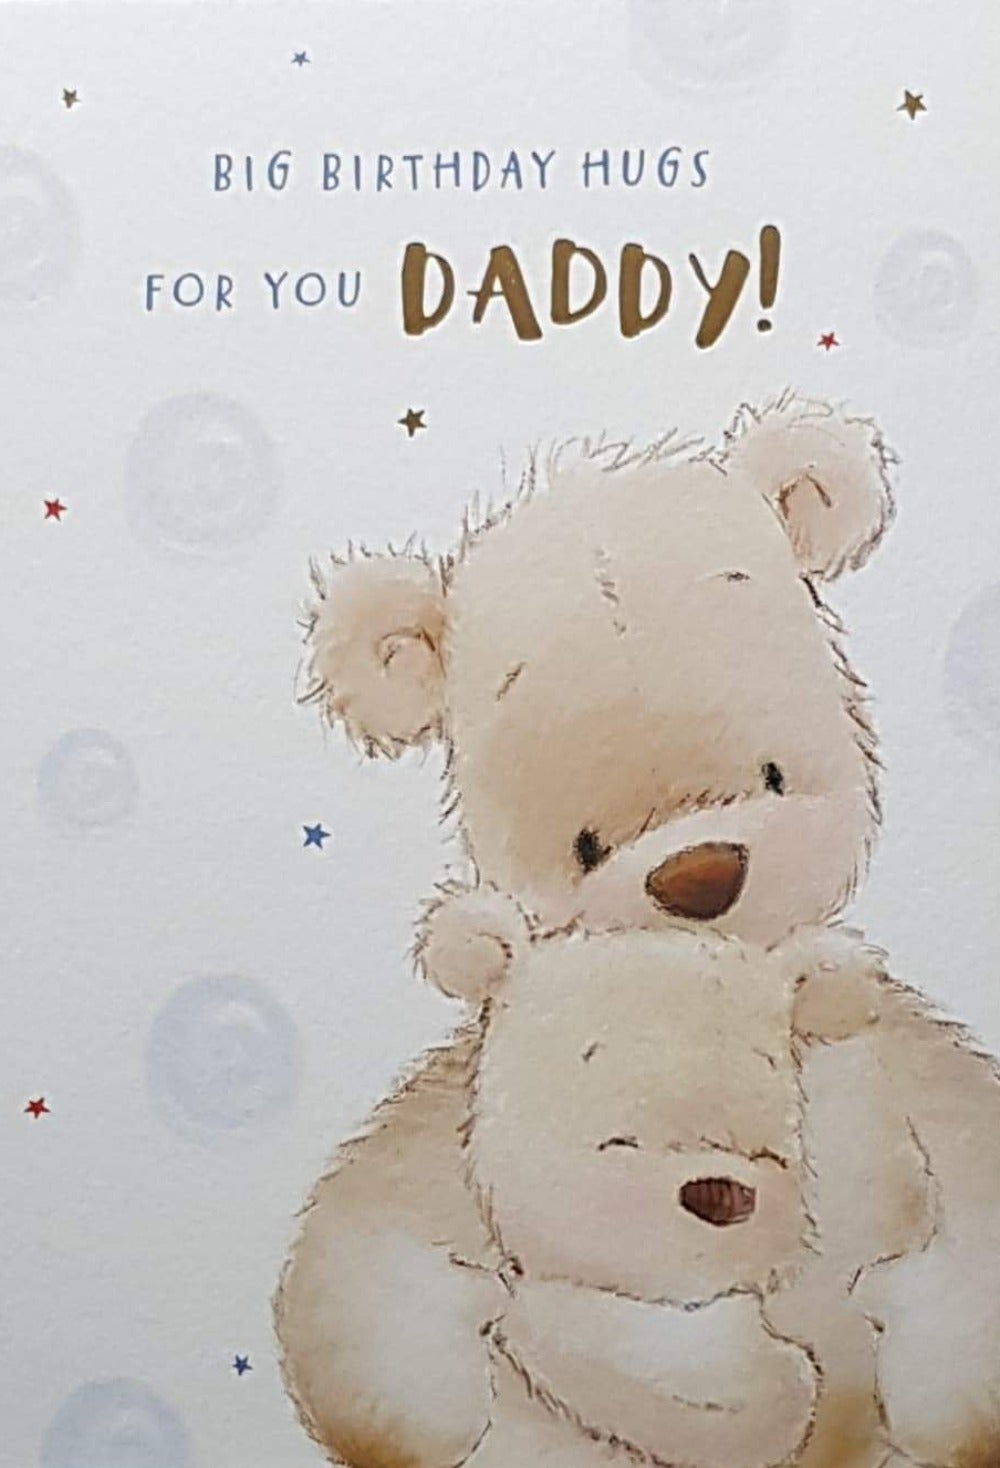 Birthday Card - Daddy / A Cub Hugging A Big Bear